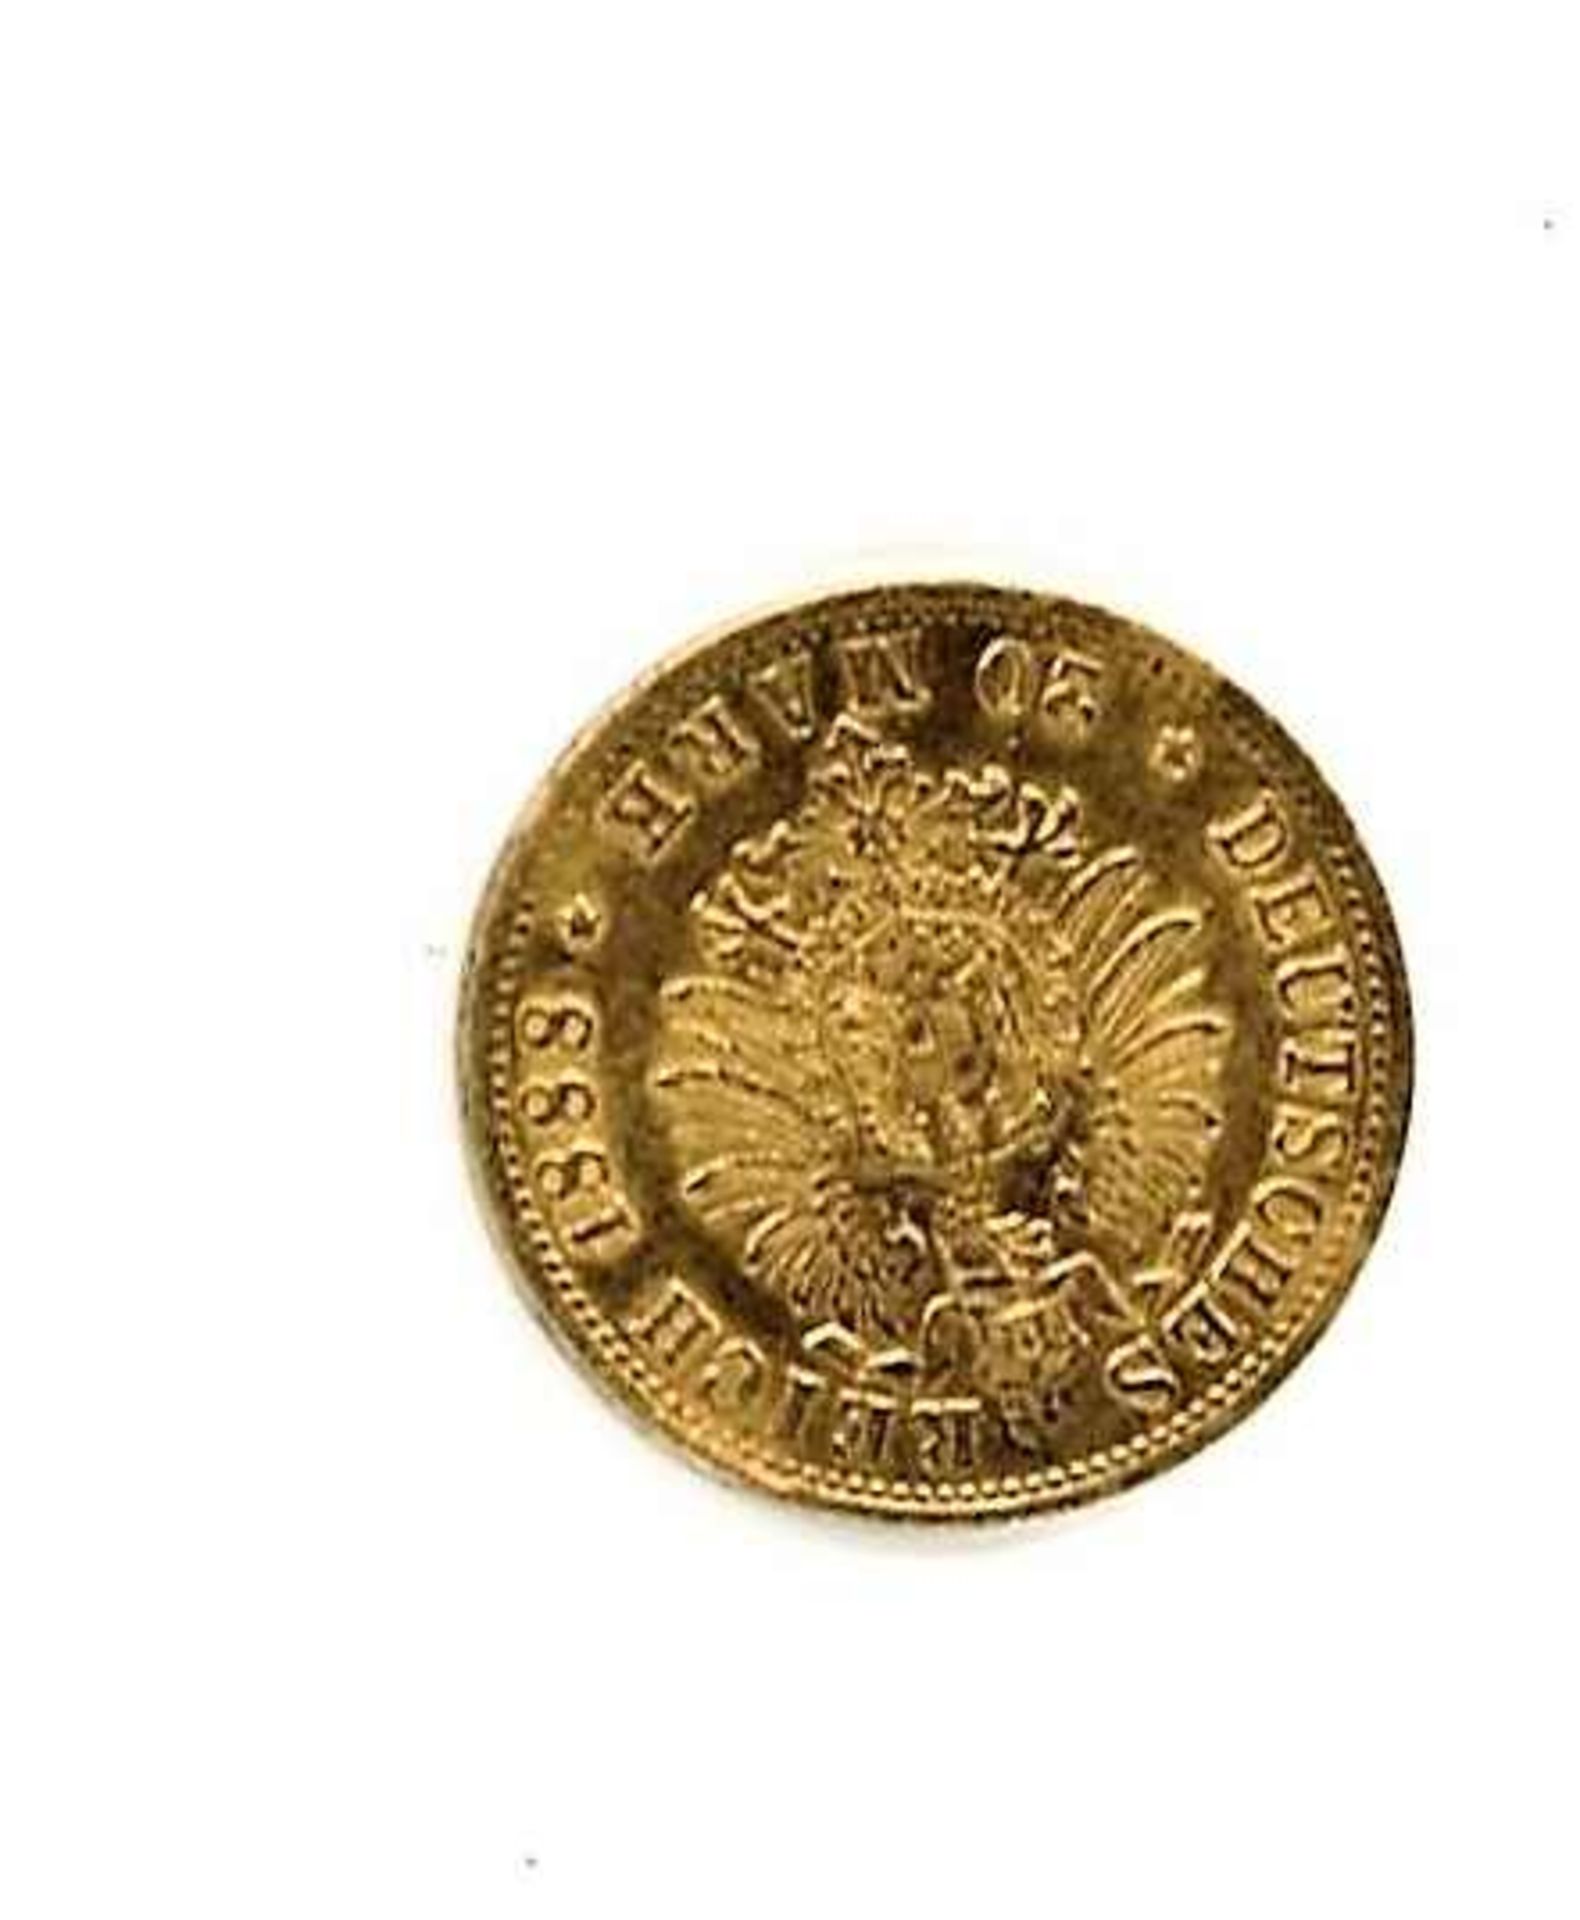 Goldmünze Kaiserreich Preußen, 20 Mark, 1888 A. Zustand: sehr schön - vorzüglich.>/de> - Bild 2 aus 2